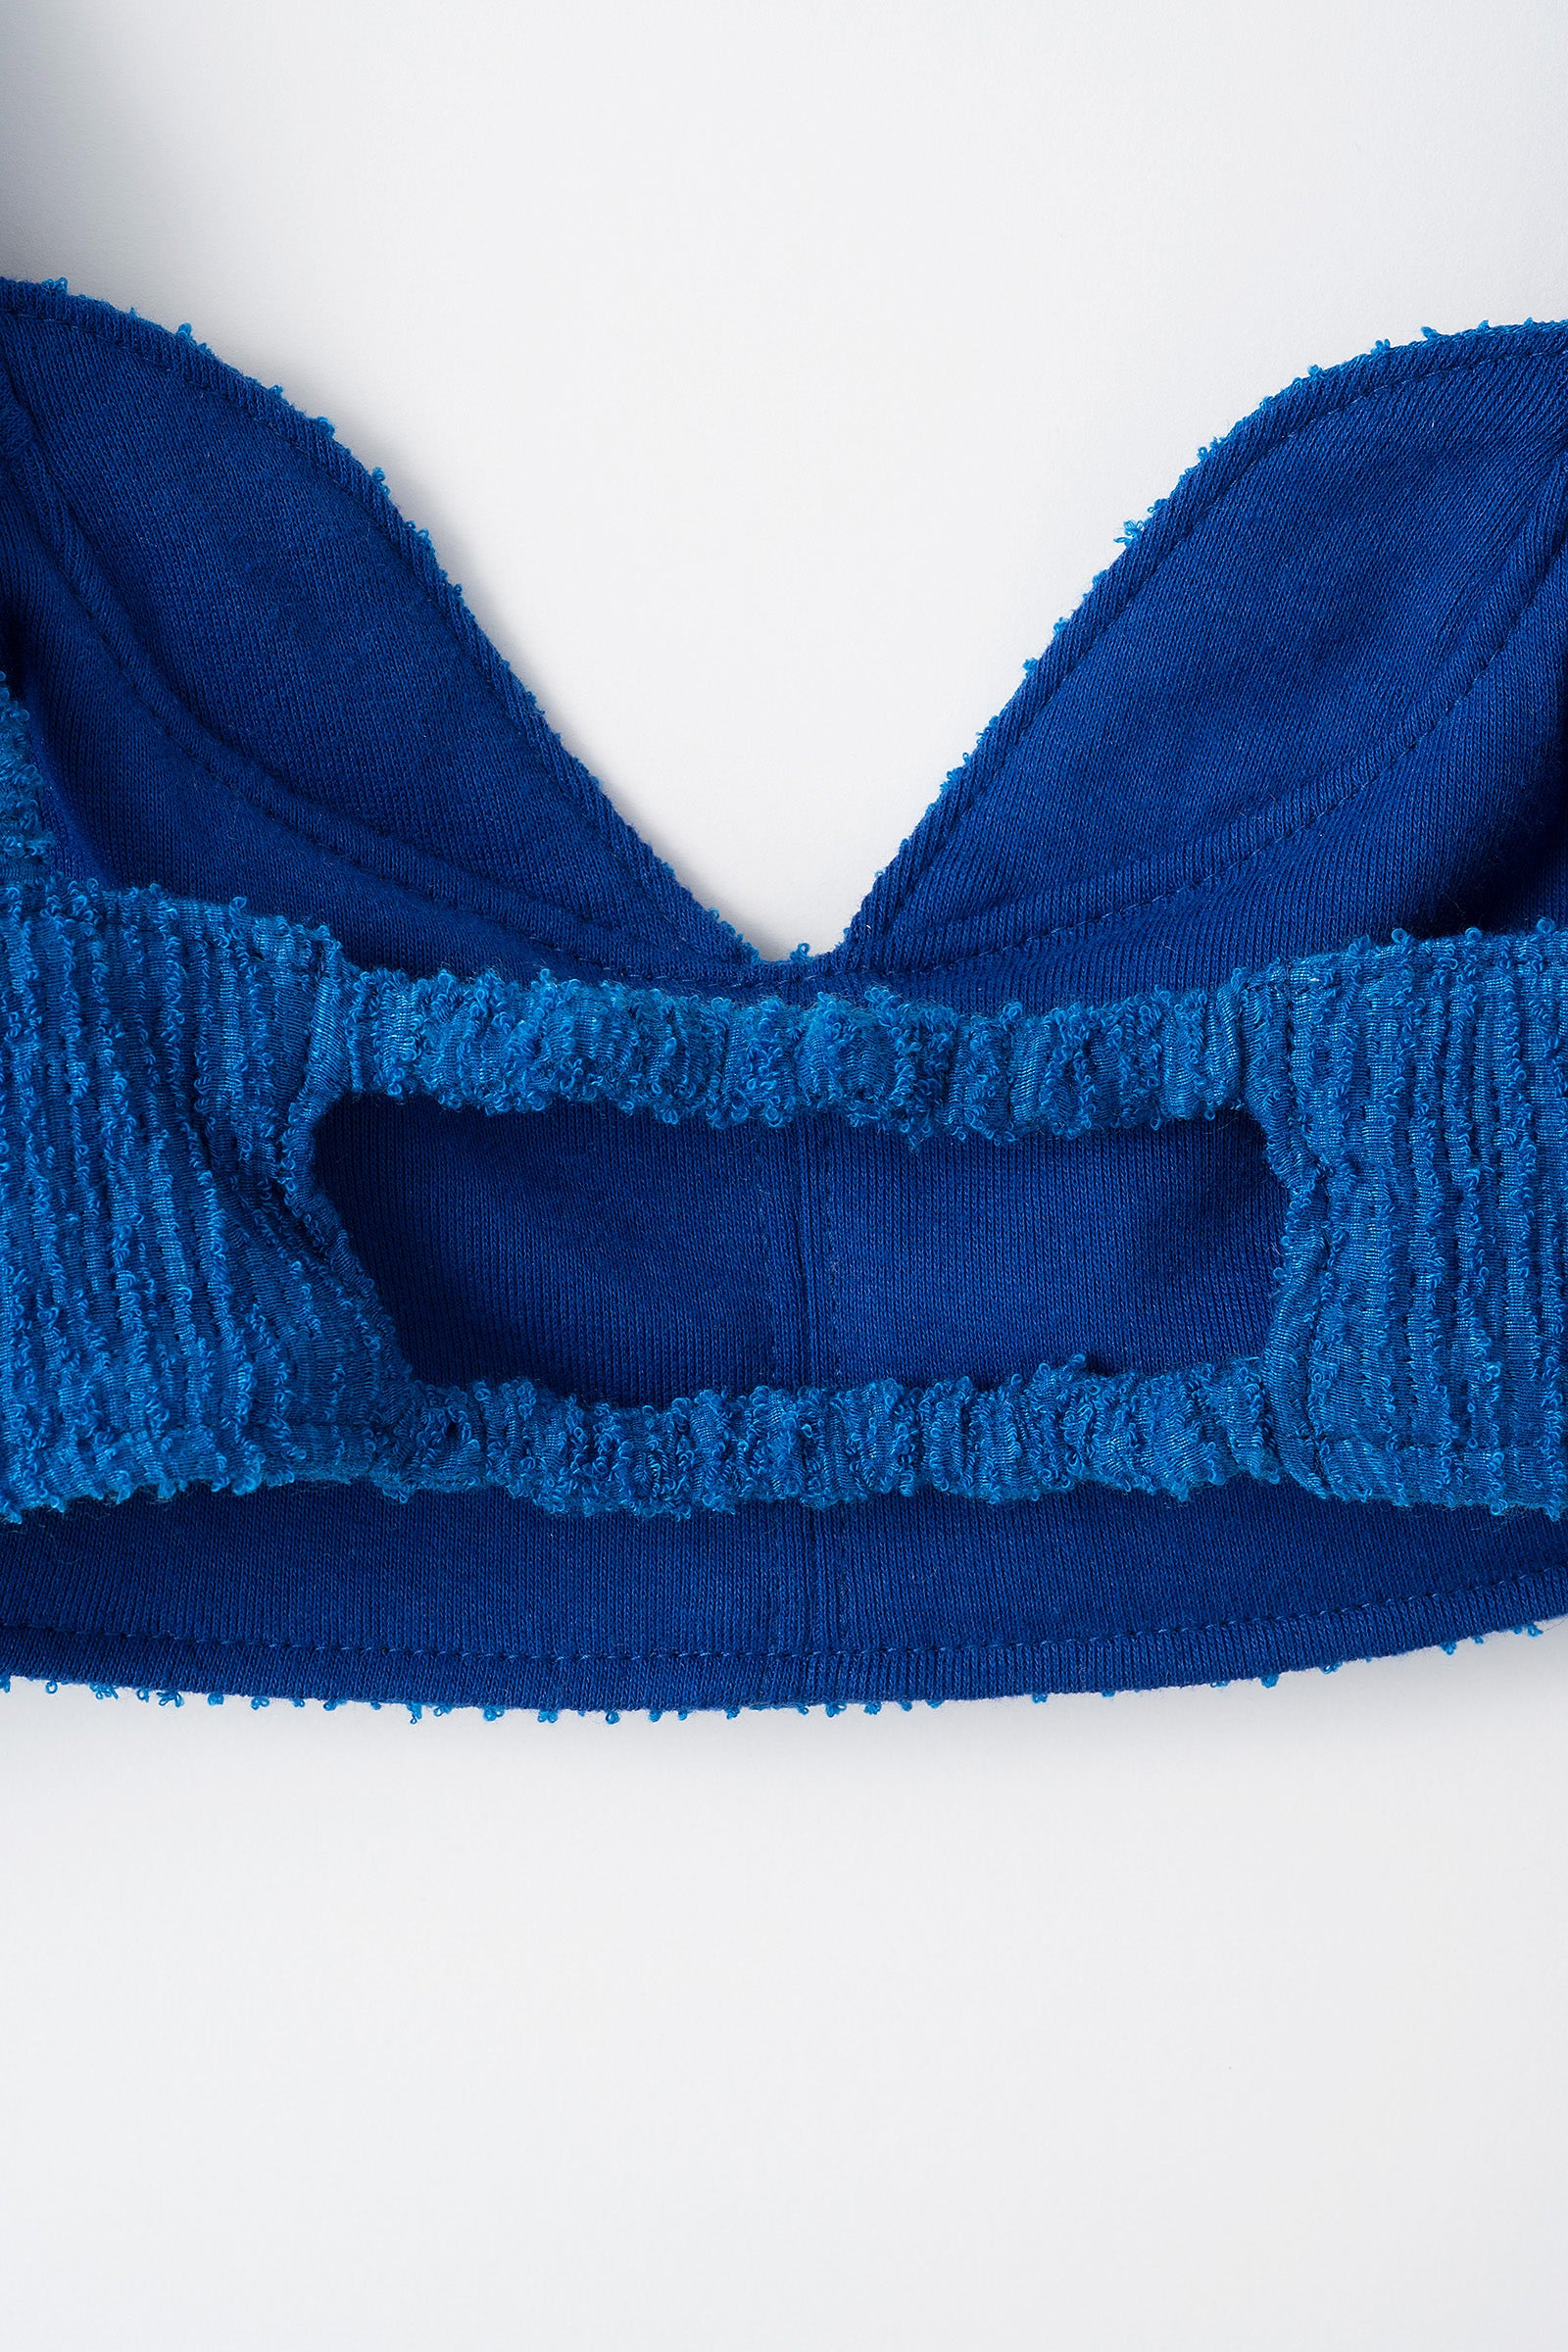 Unevenness bra top (Blue)